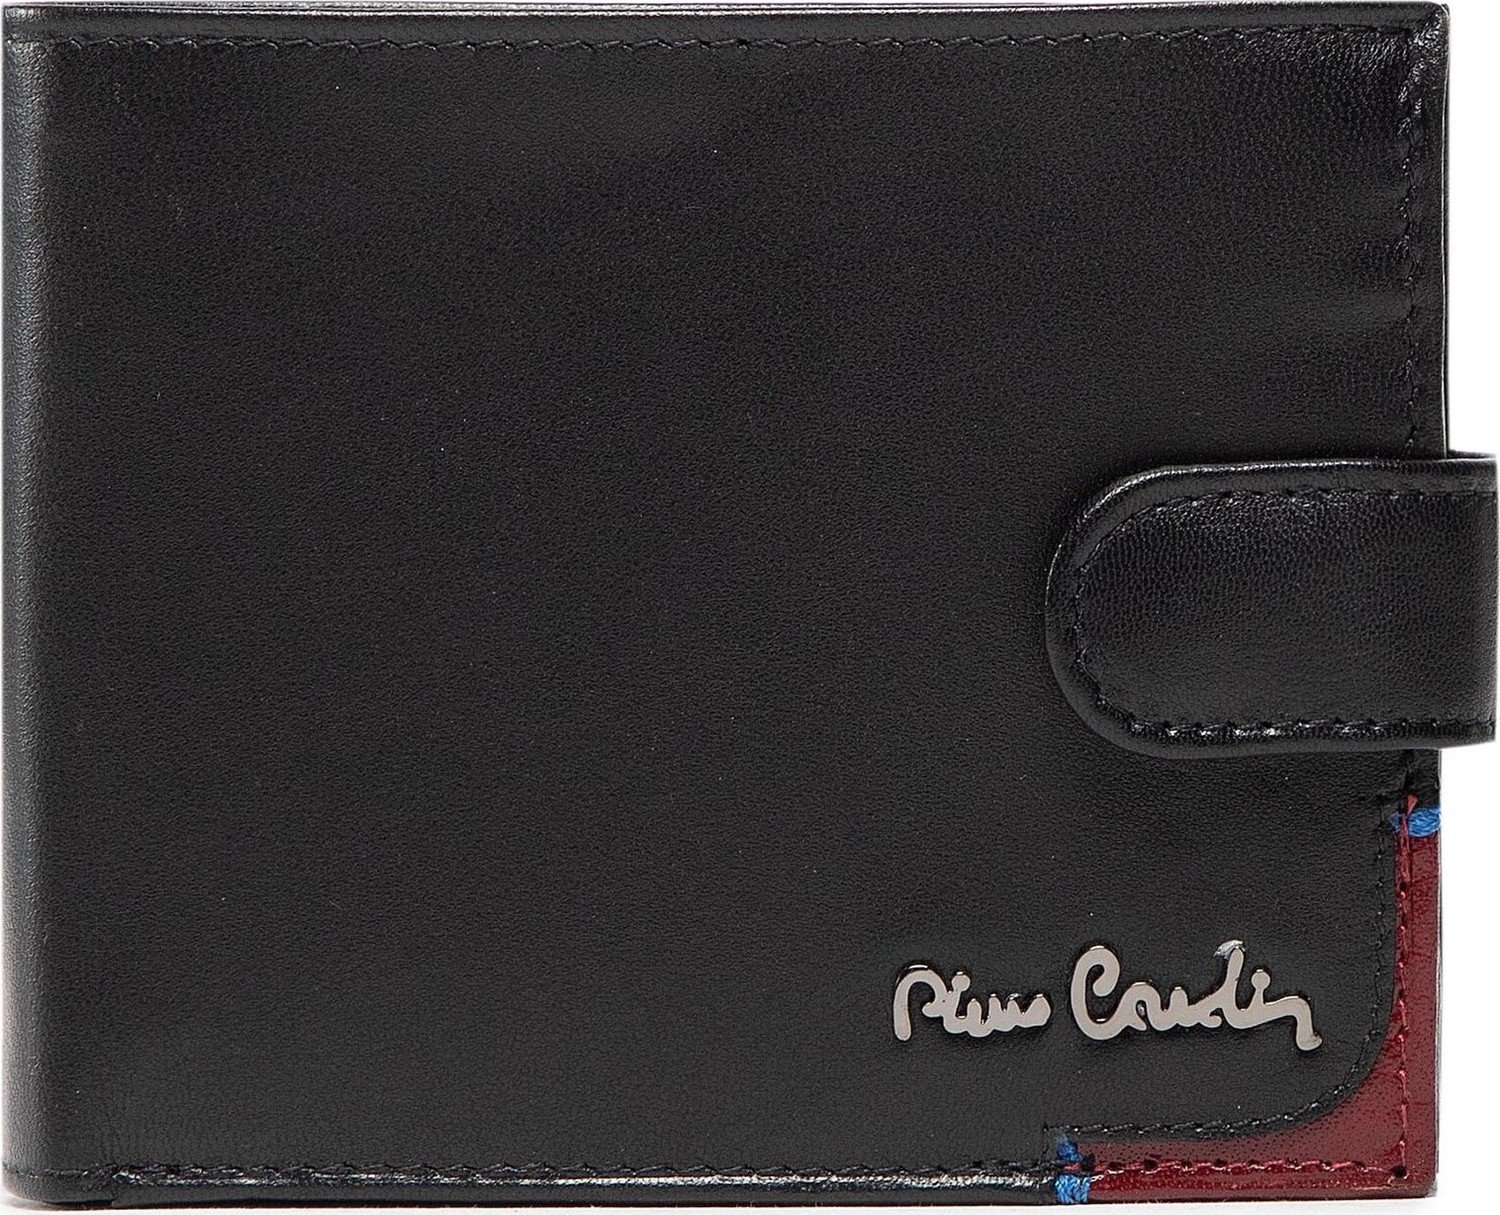 Velká pánská peněženka Pierre Cardin Tilak75 324A Nero/Rosso